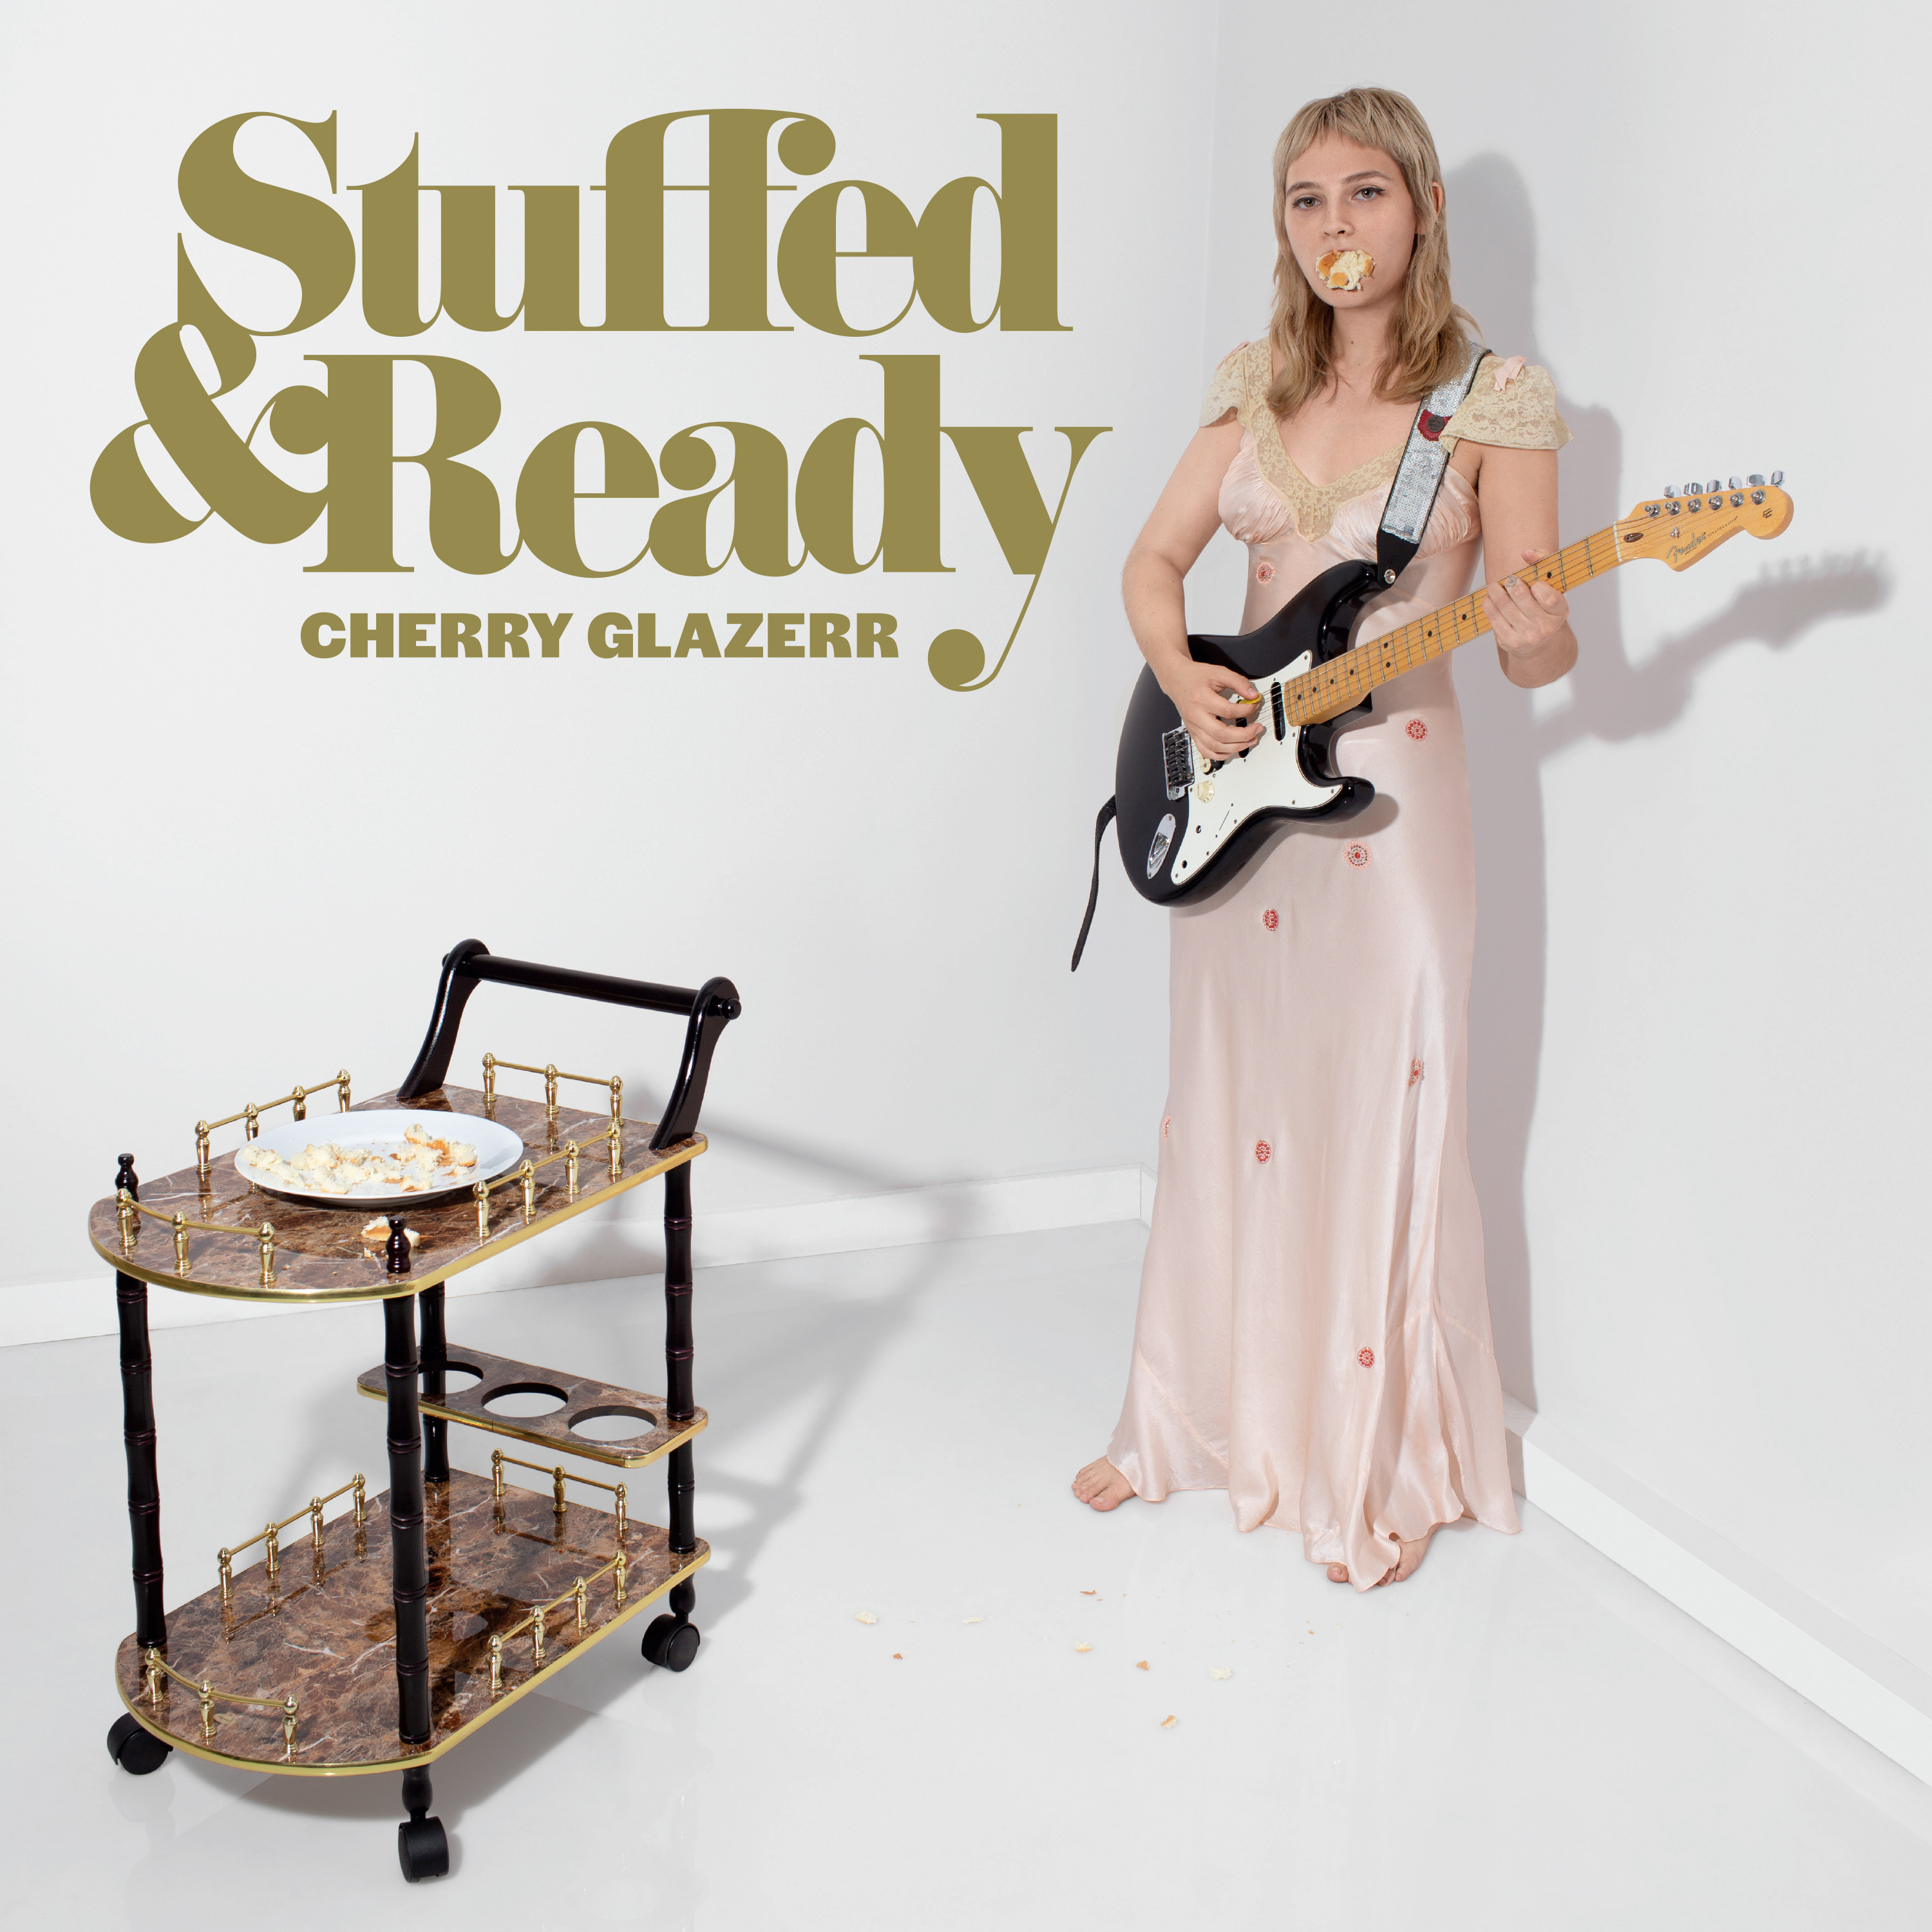 Cherry Glazerr - Stuffed & Ready - CD